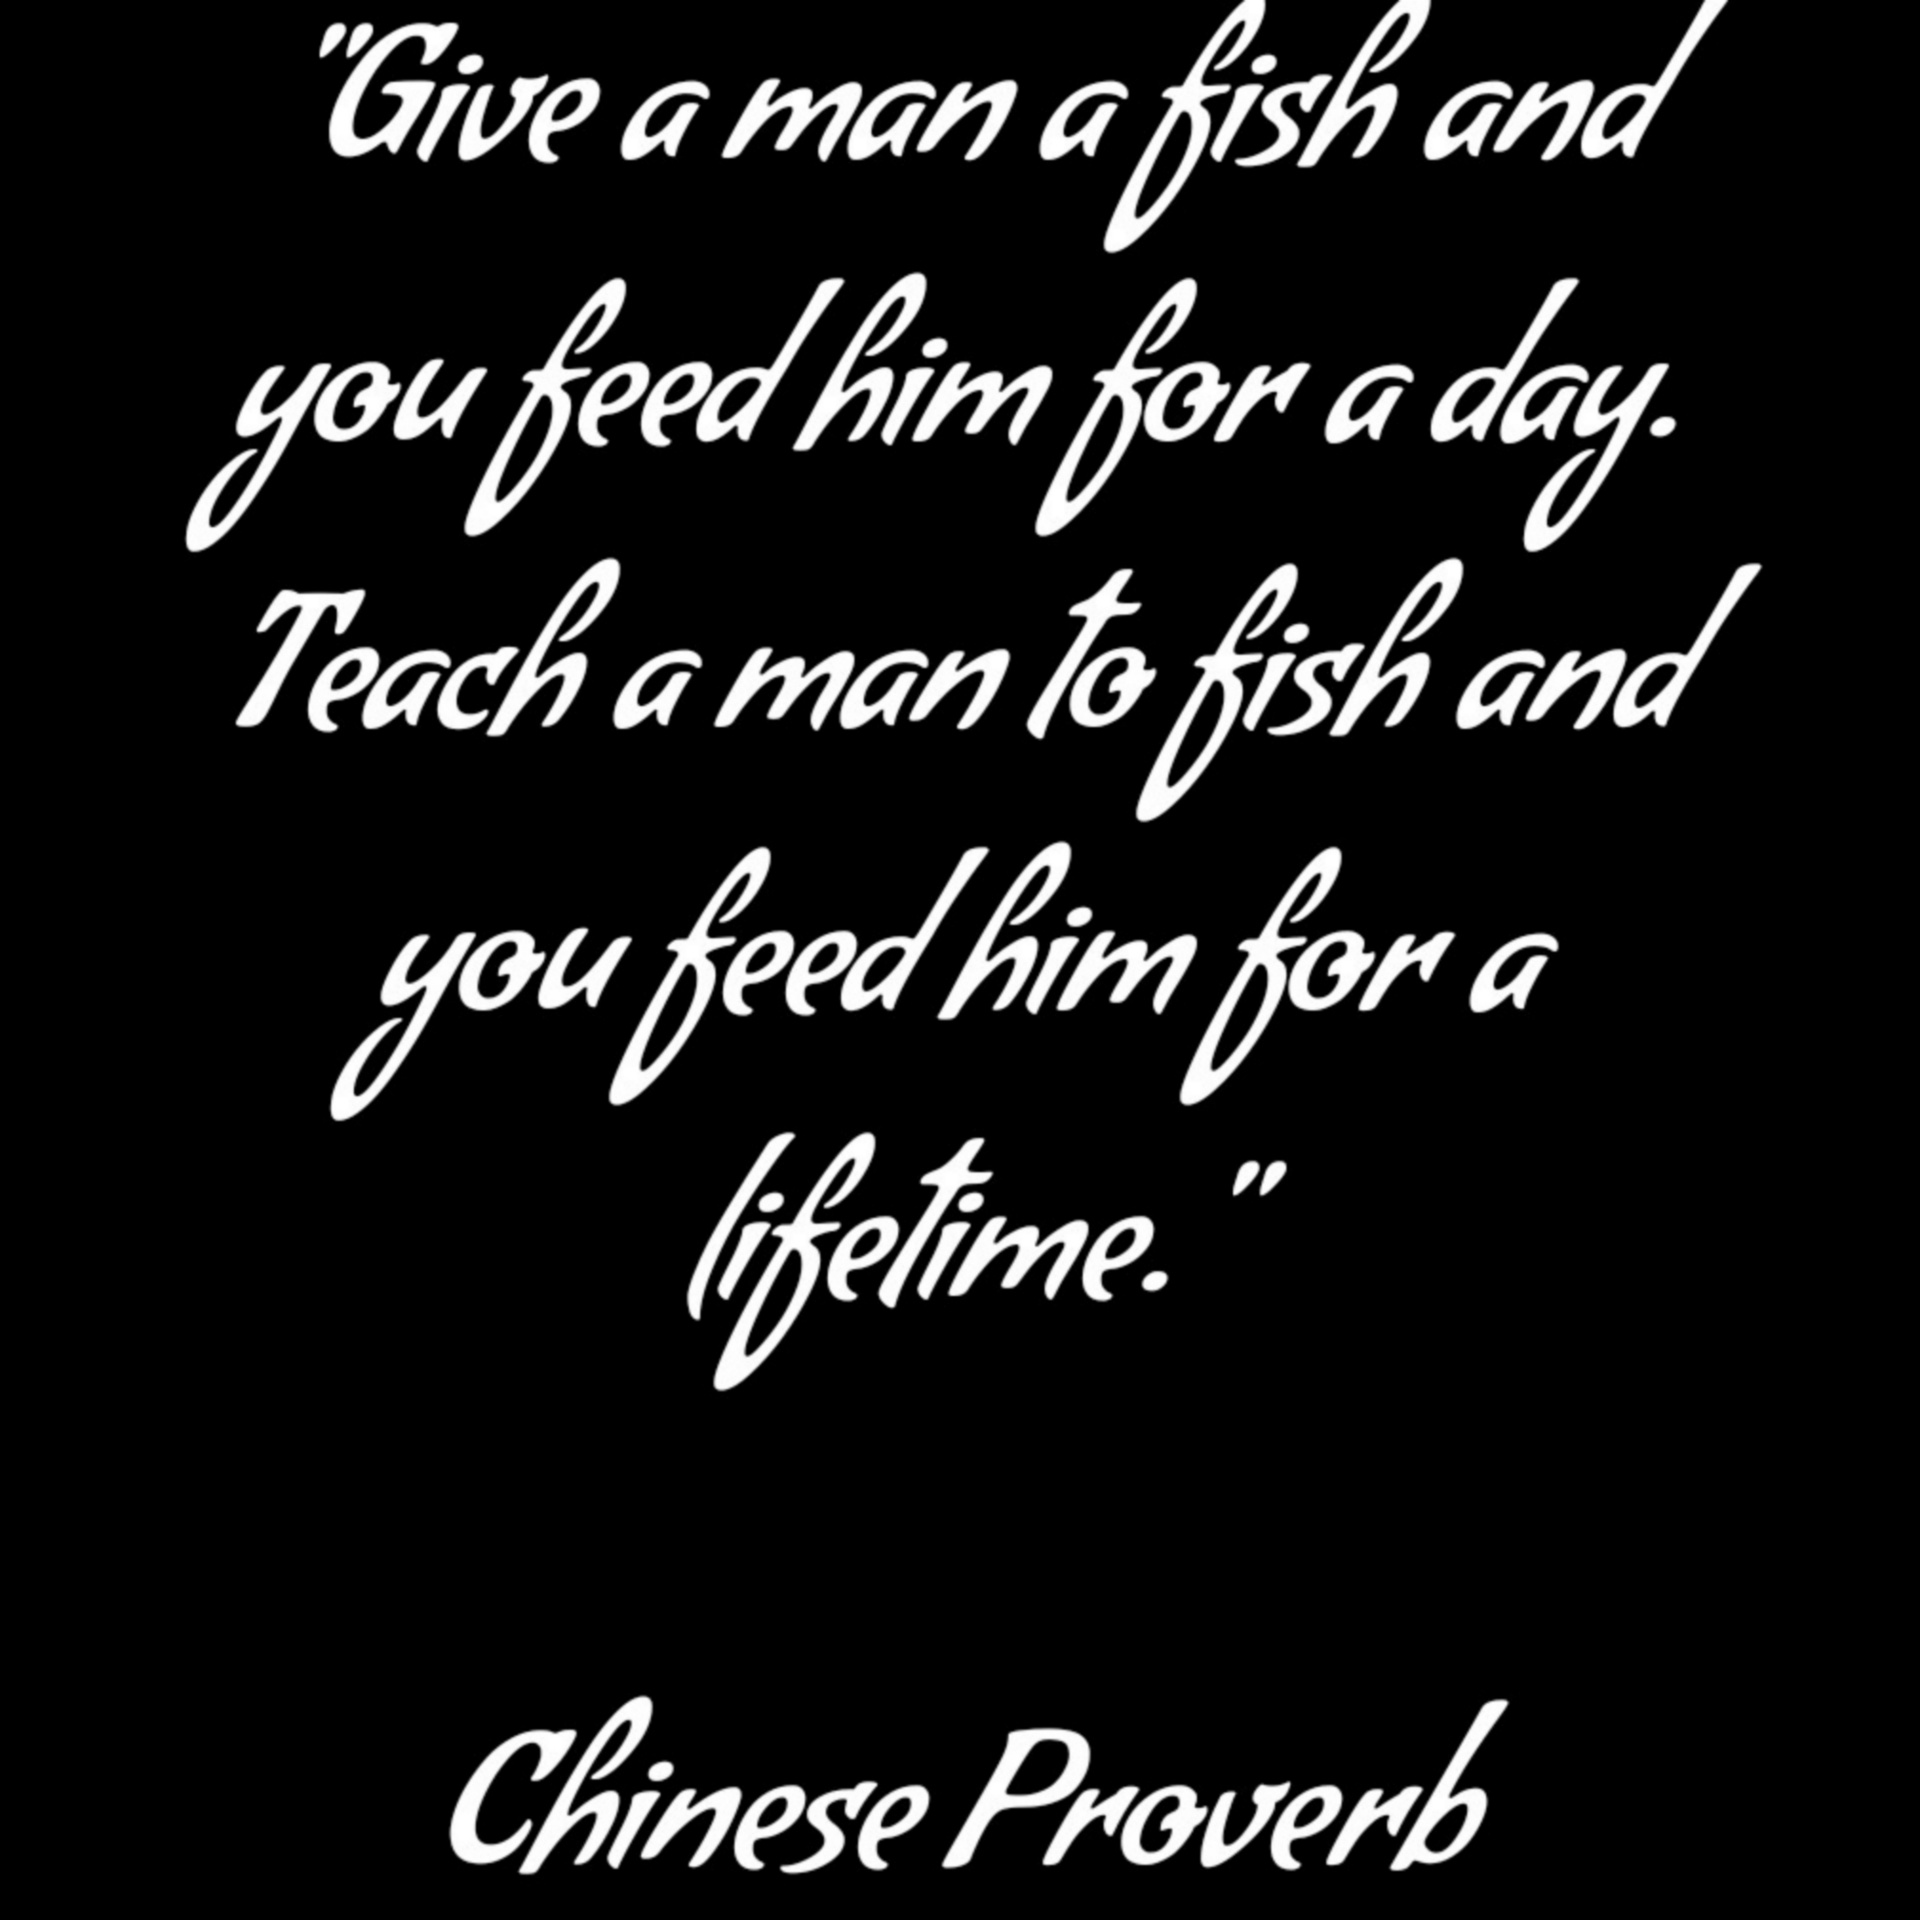 Chinees gezegde op vis